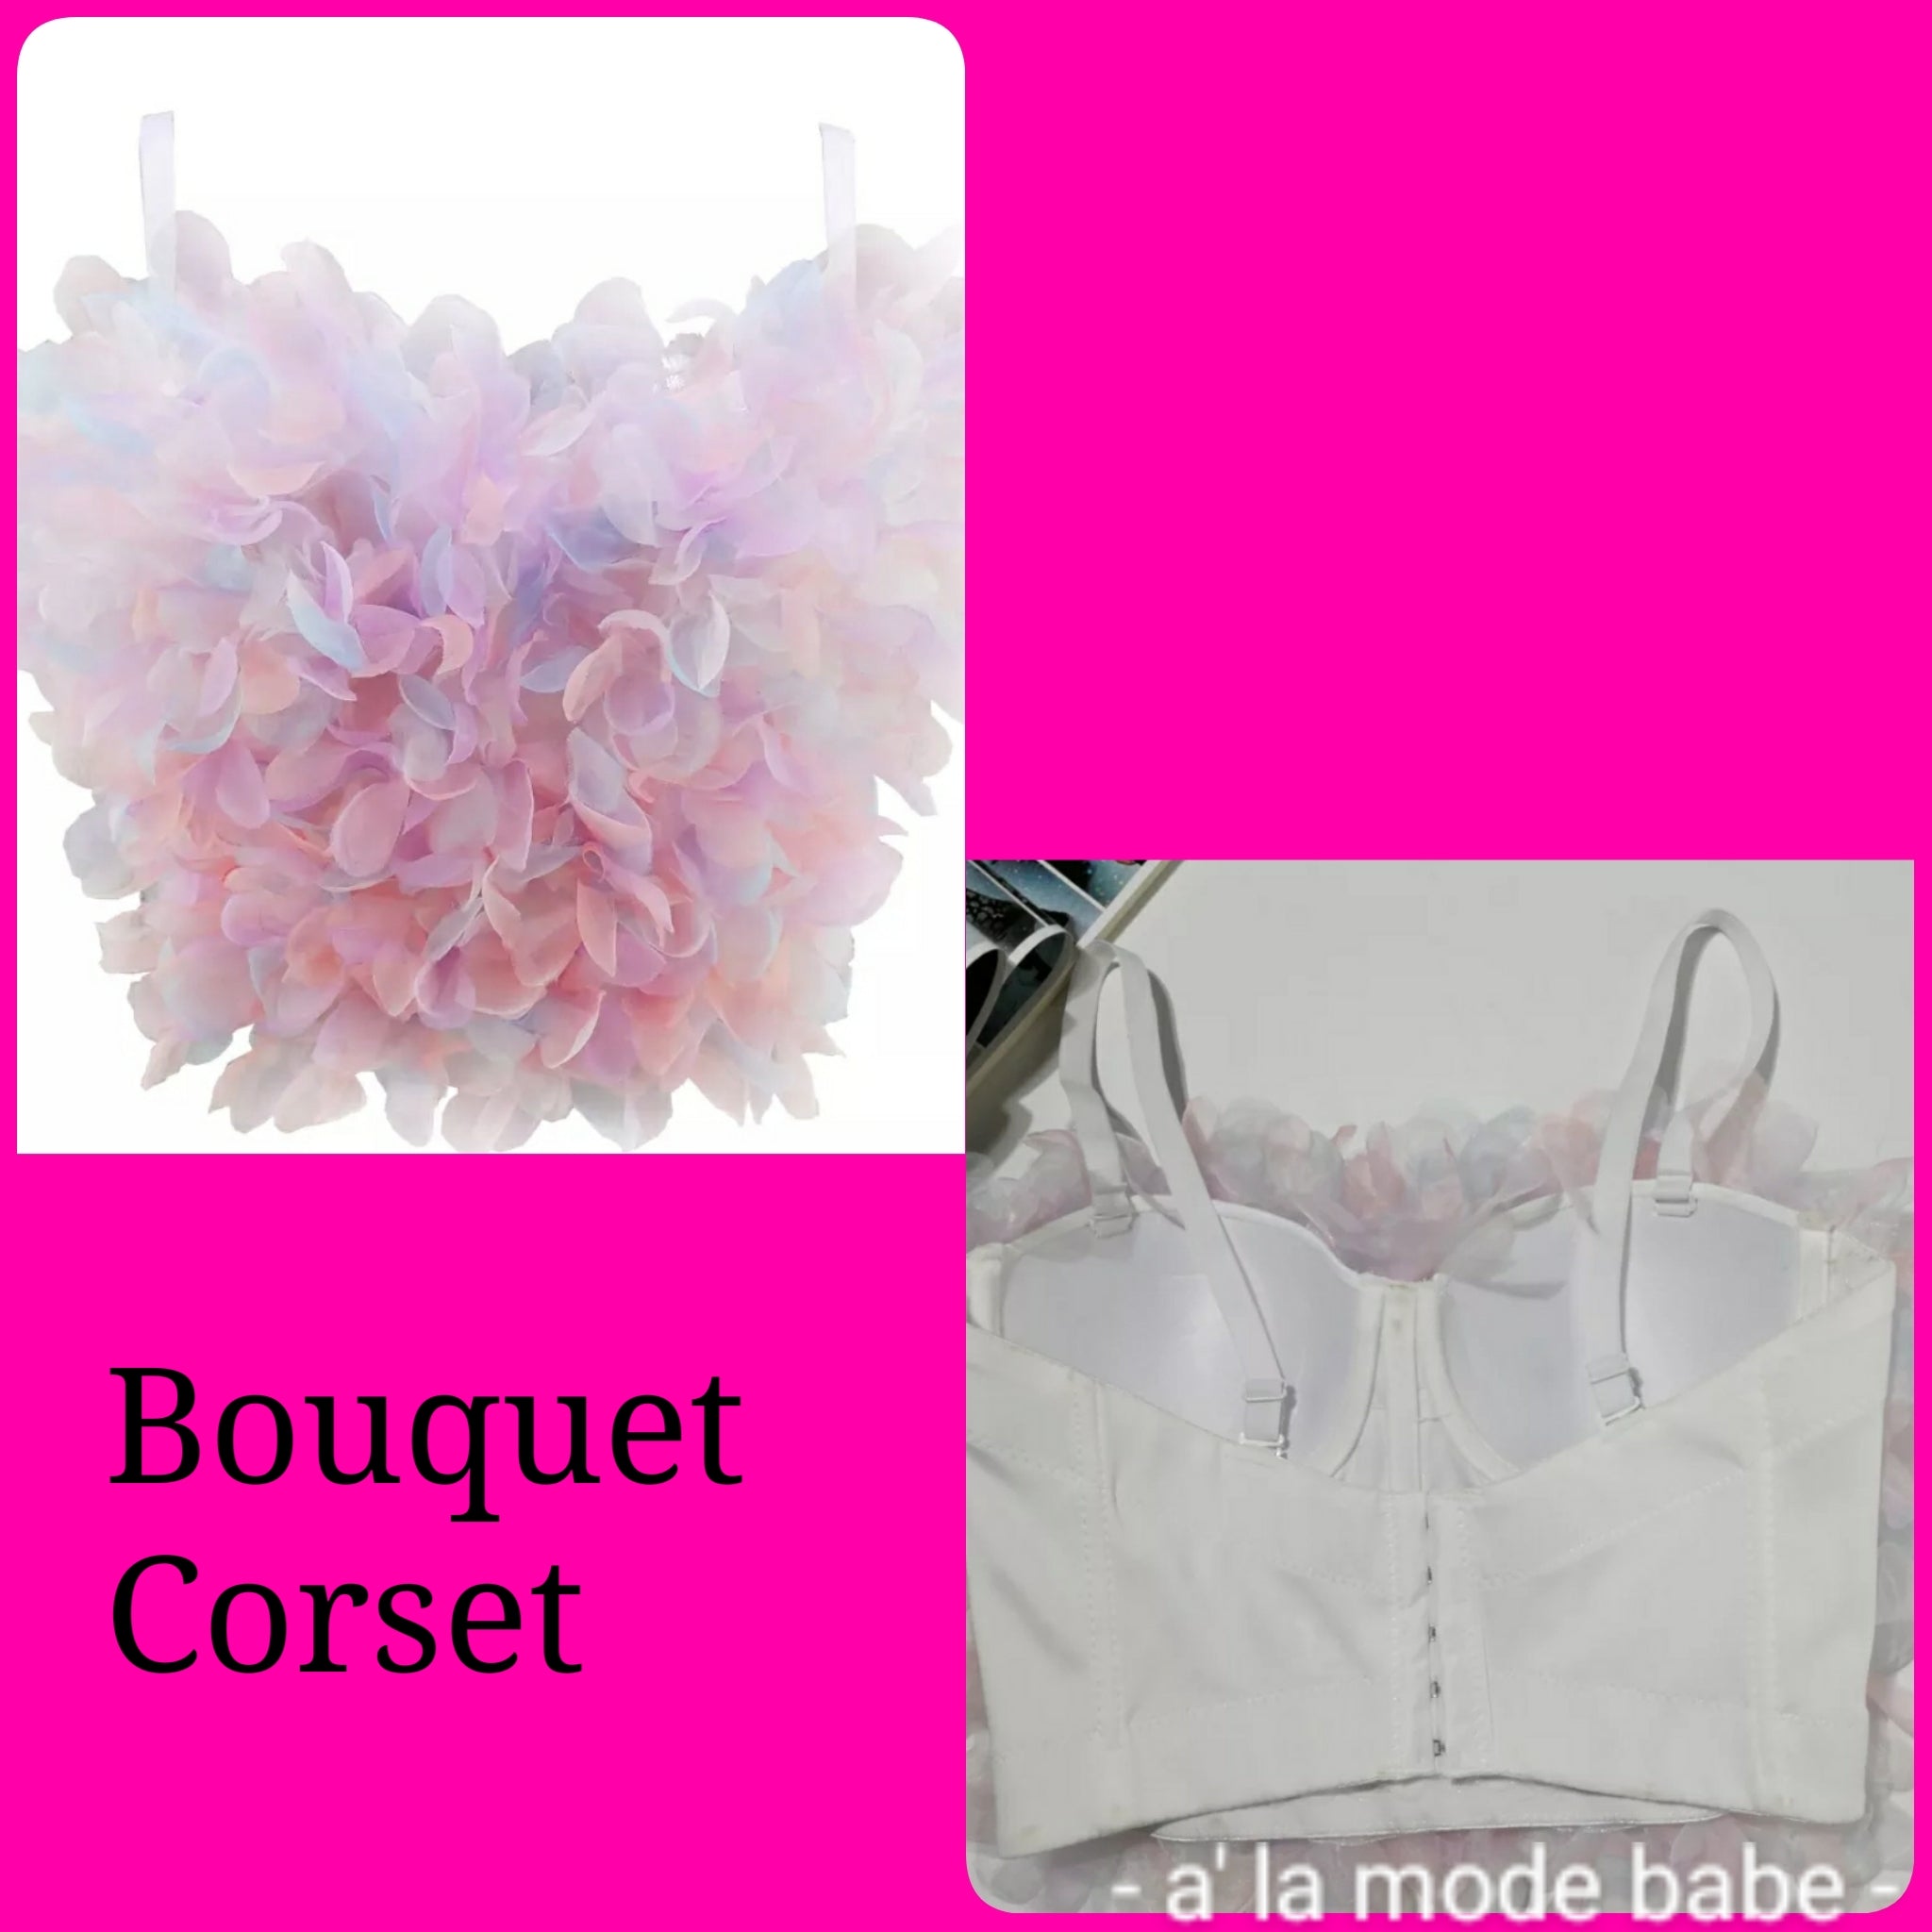 Bouquet Corset